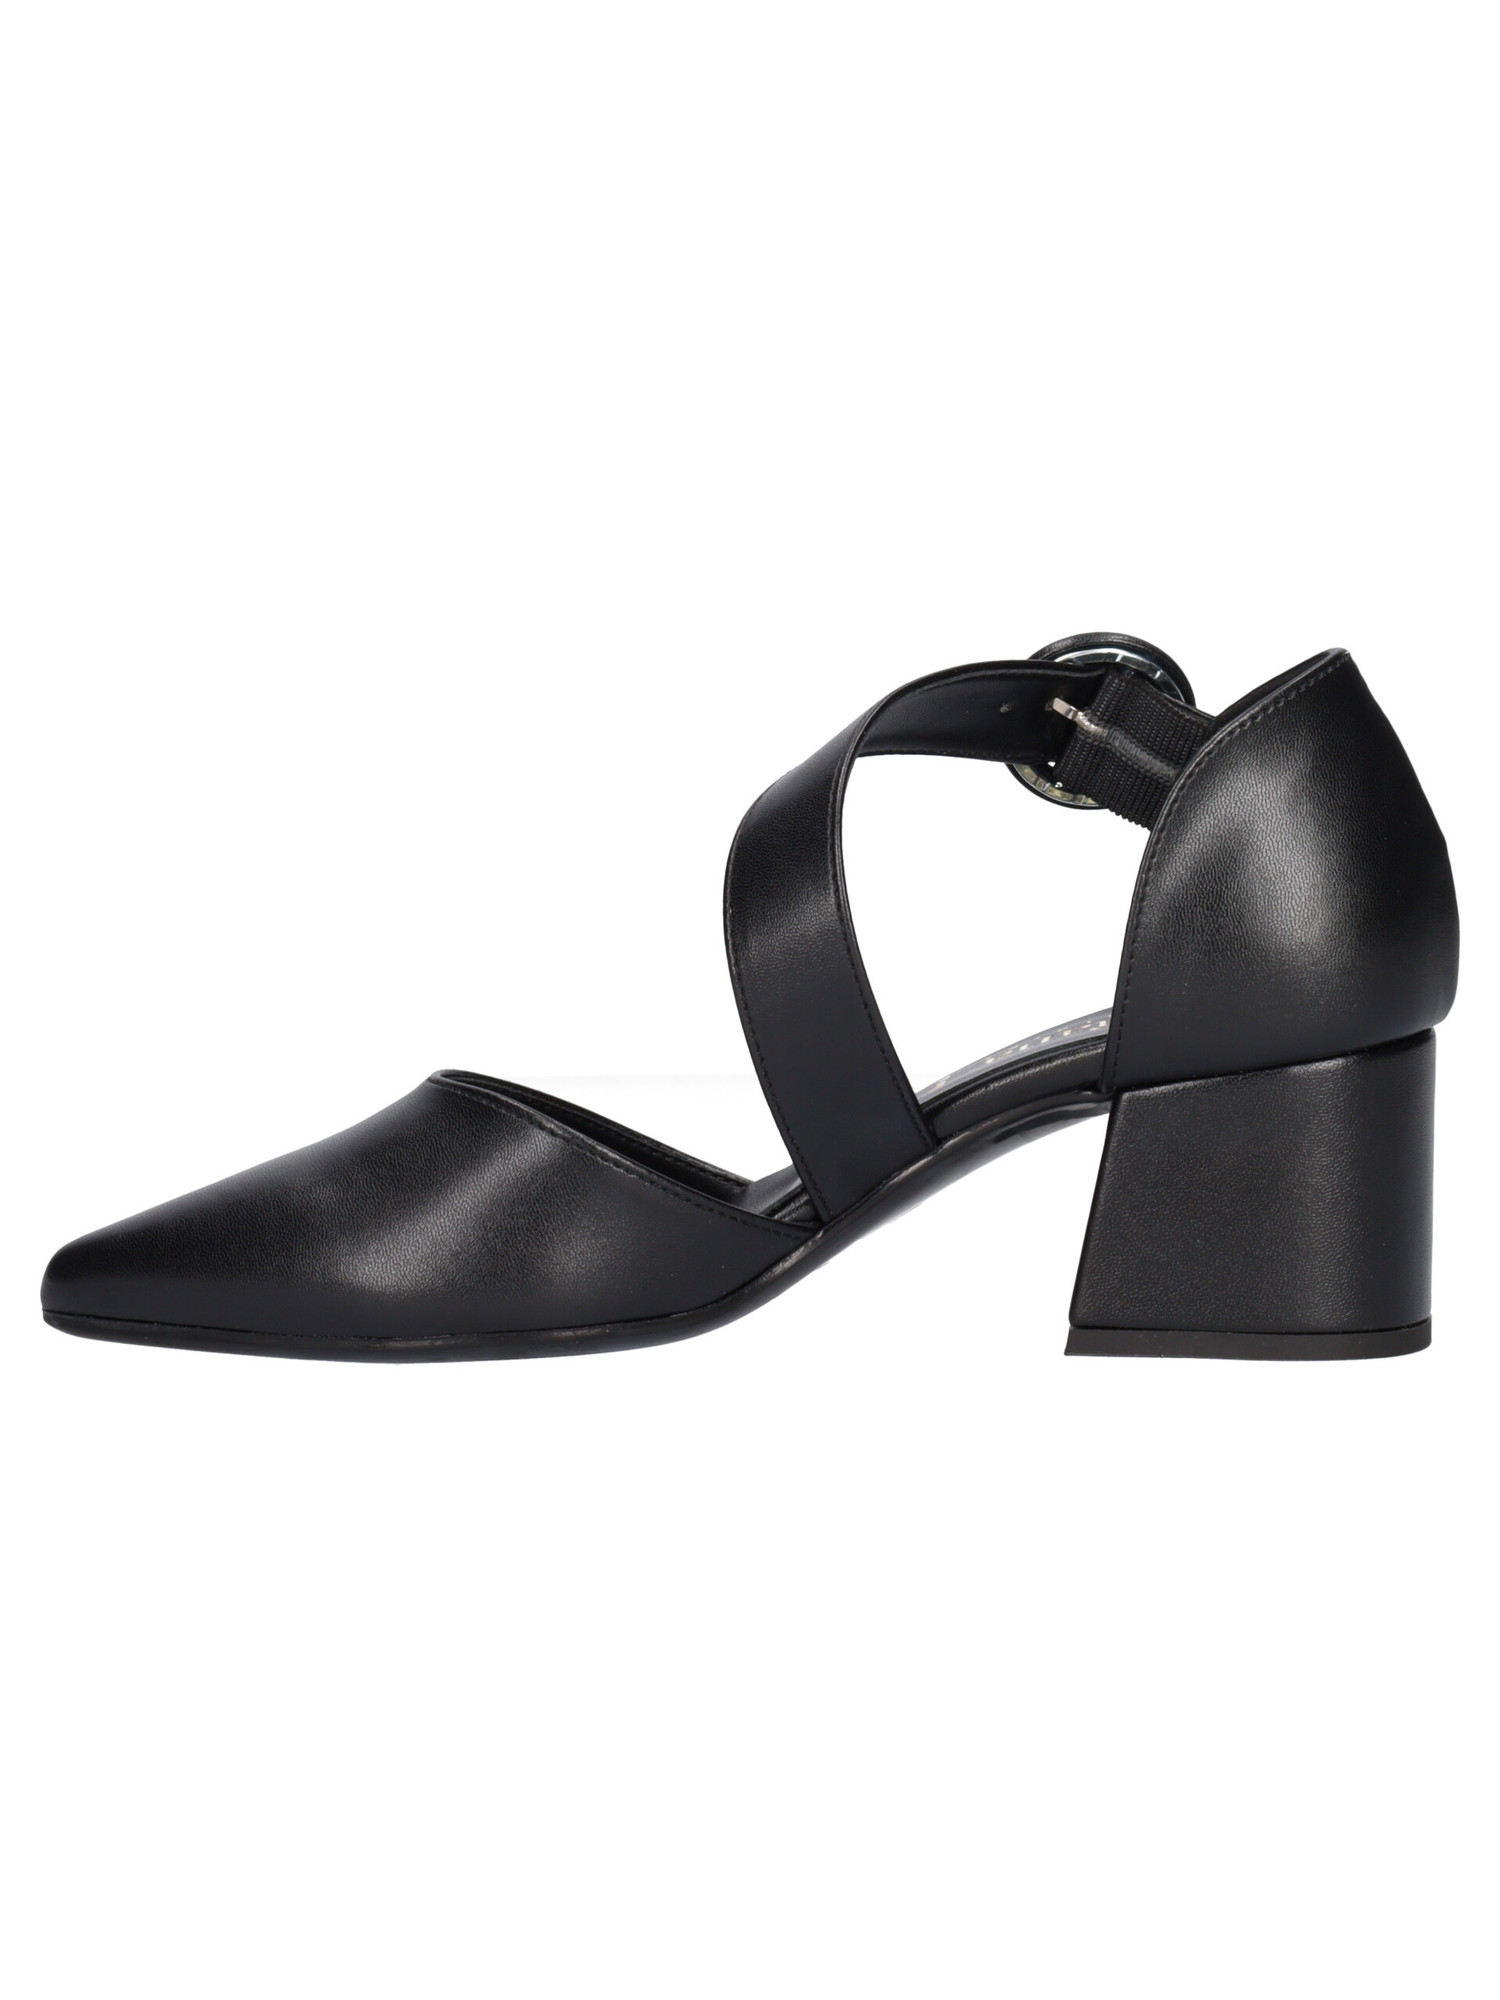 scarpa-tacco-largo-liviana-da-donna-nera-0b207a